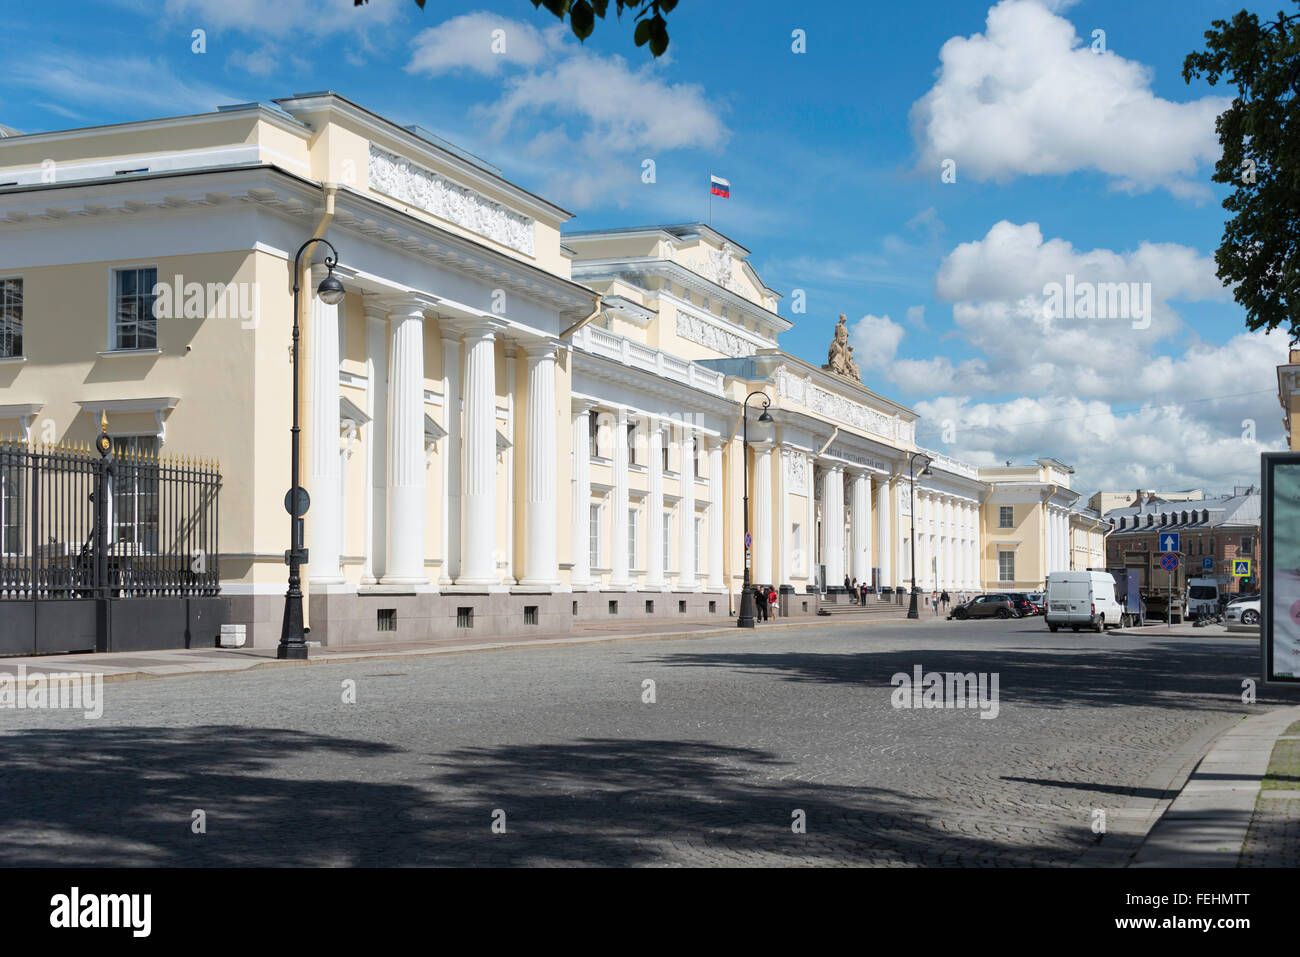 Das Russische Museum für Völkerkunde, Inzhenernaya Street, St. Petersburg, nordwestliche Region, Russische Föderation Stockfoto